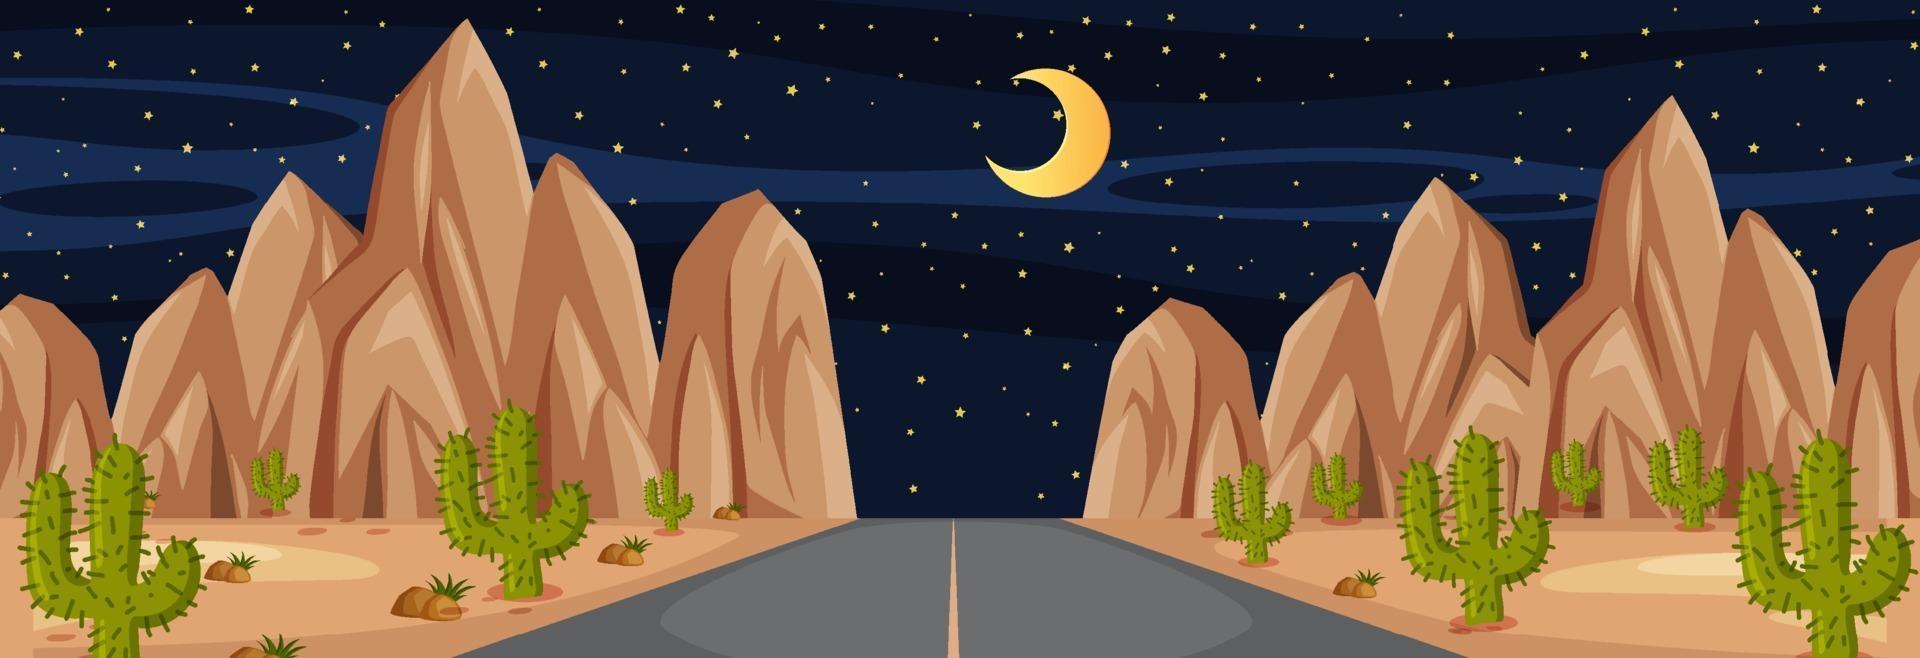 cena horizontal com longa estrada no deserto à noite vetor